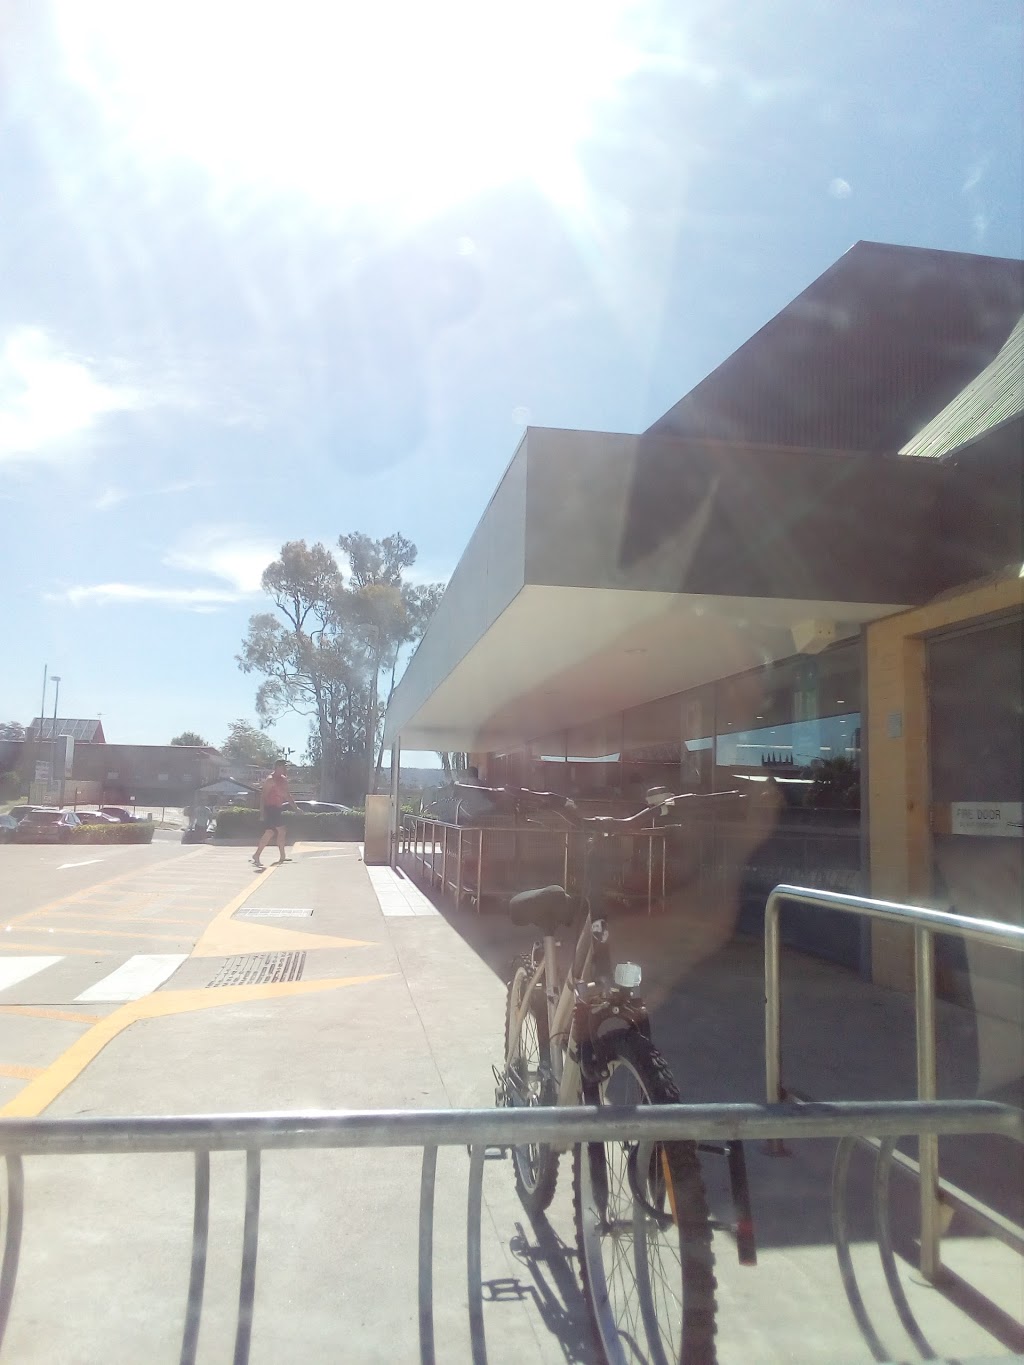 ALDI Penrith | supermarket | 201-205 High St, Penrith NSW 2750, Australia